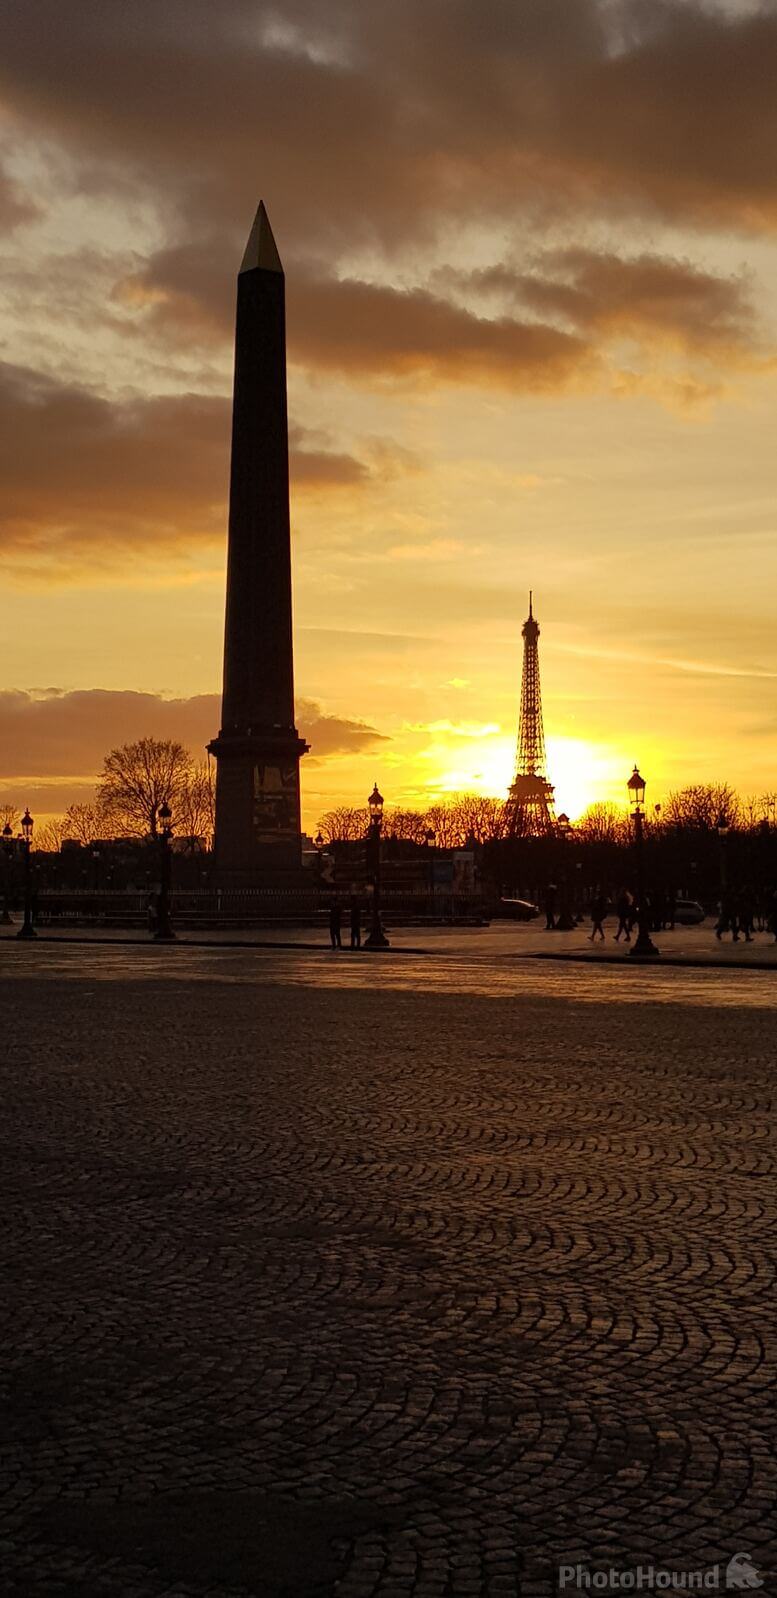 Image of Place de la Concorde by Team PhotoHound